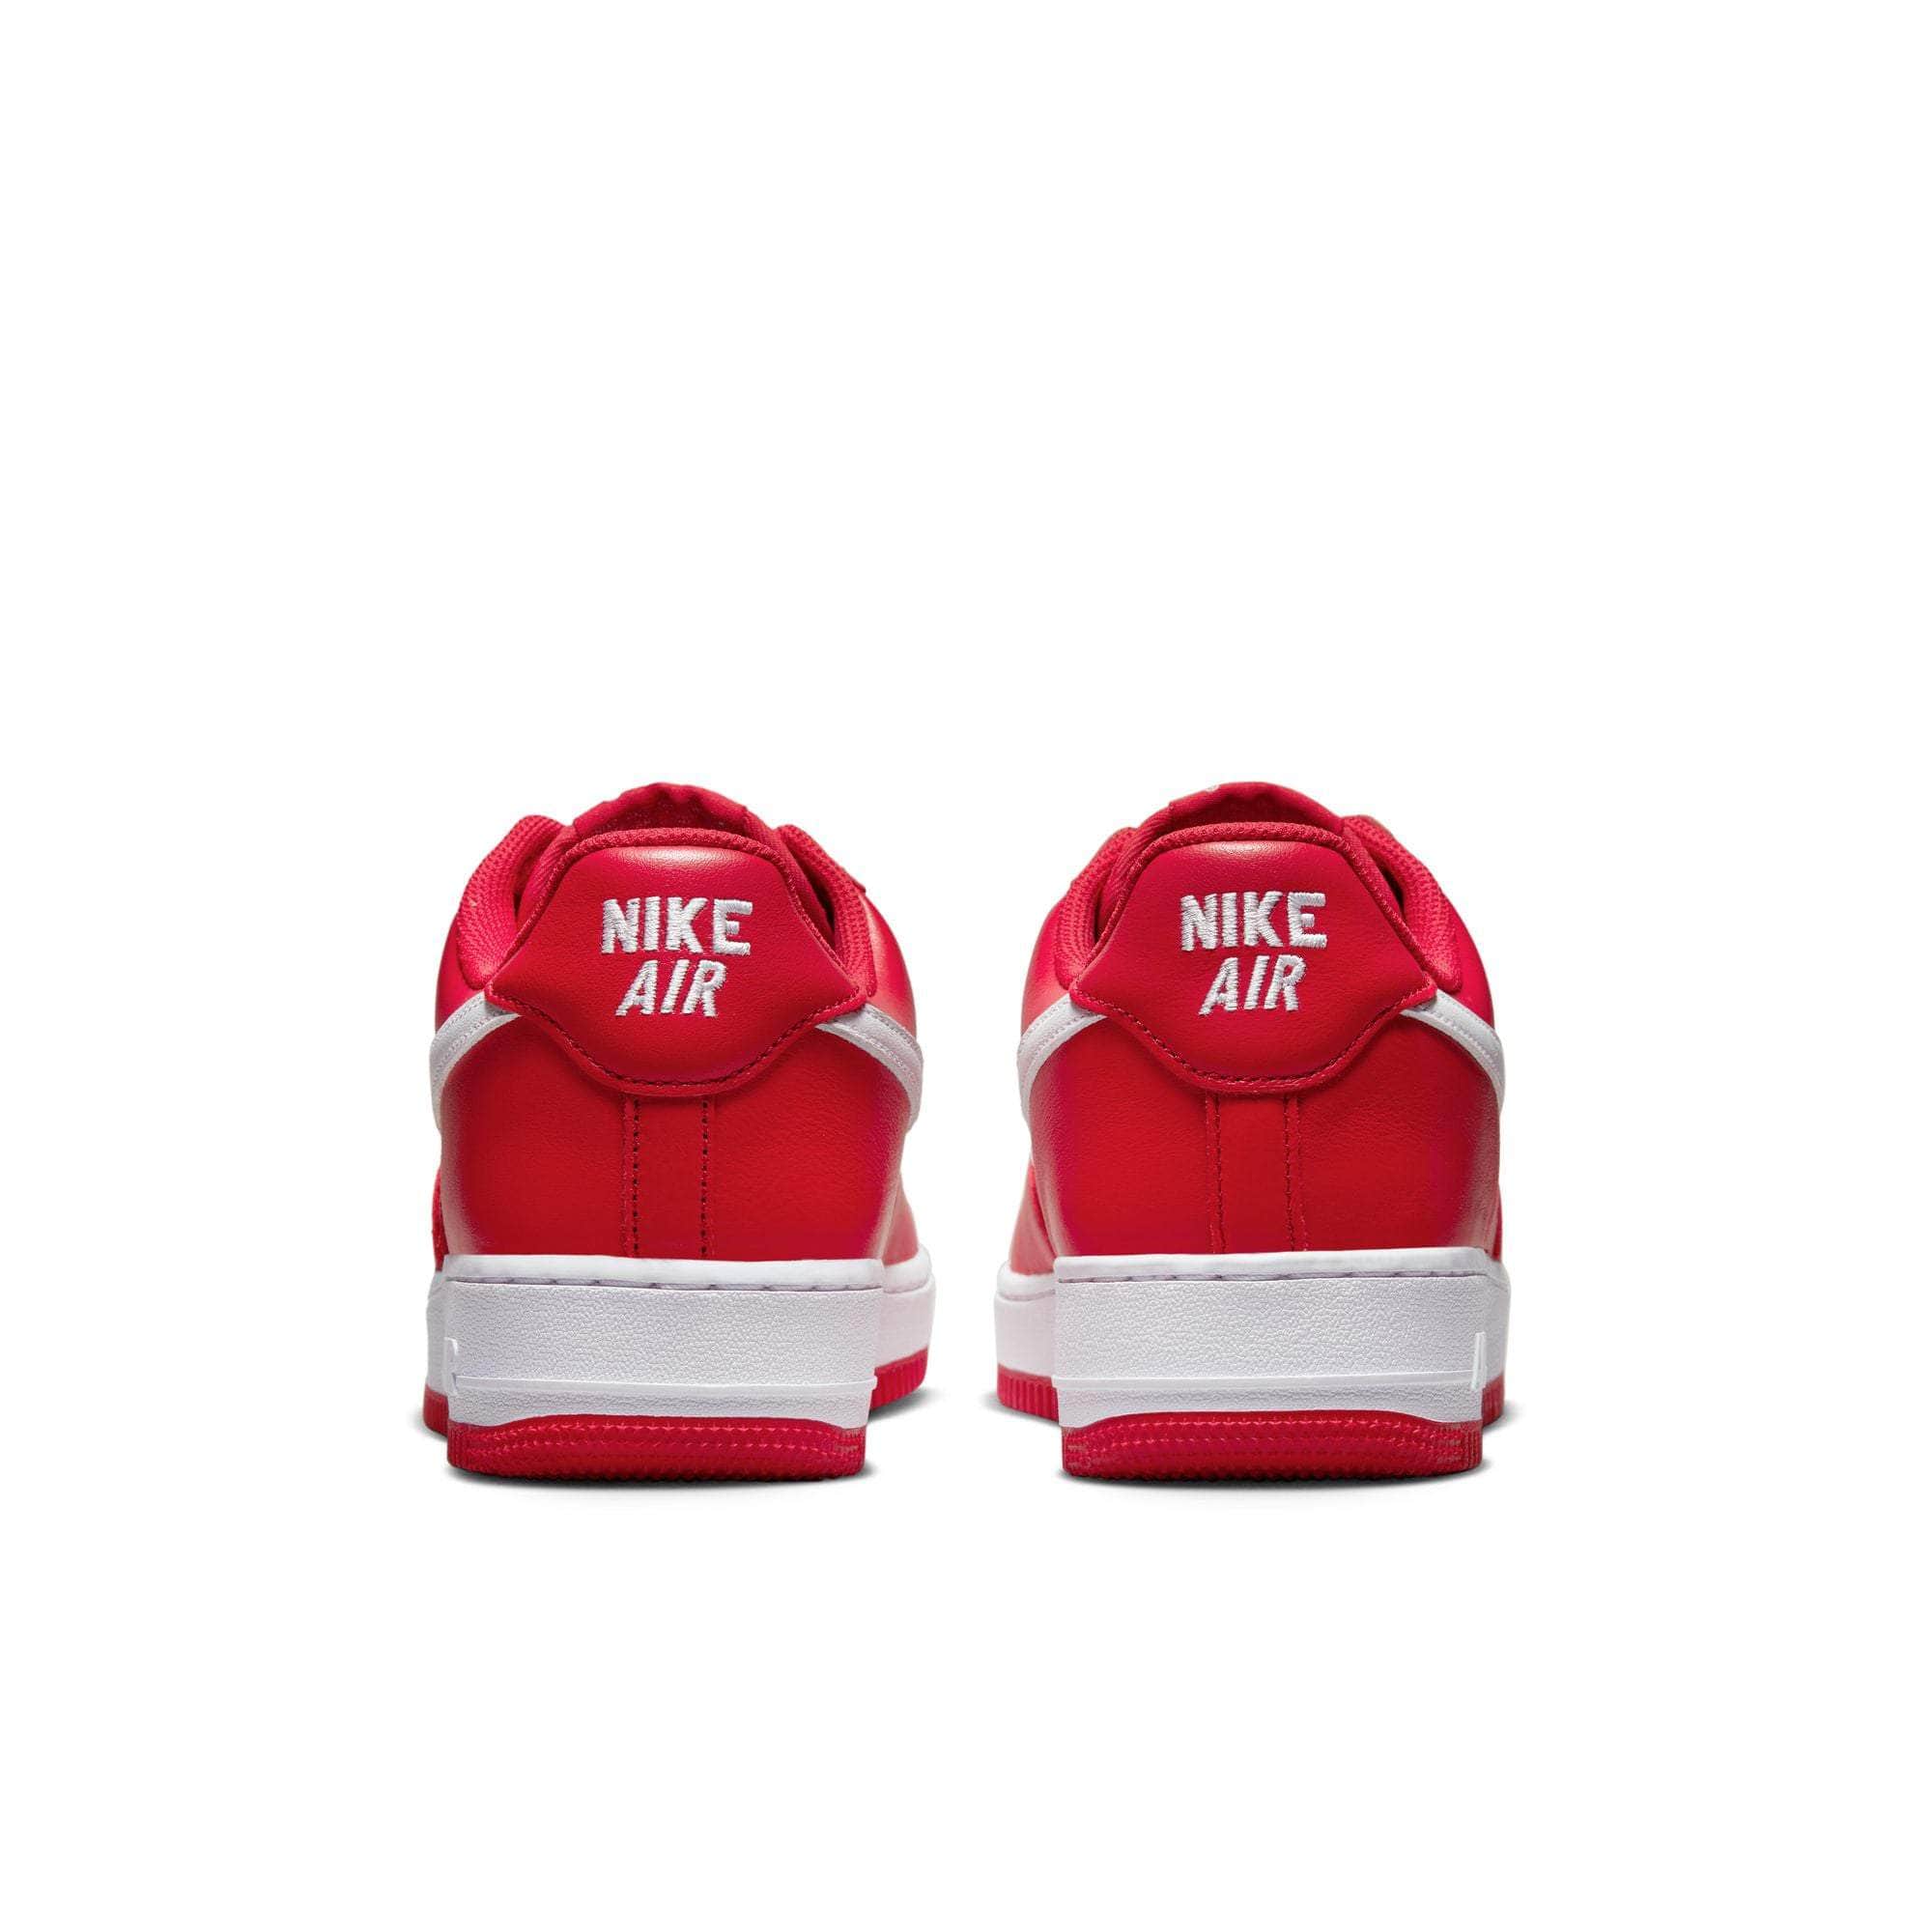 NIKE FOOTWEAR Nike Air Force 1 Low '07 Retro - Men's